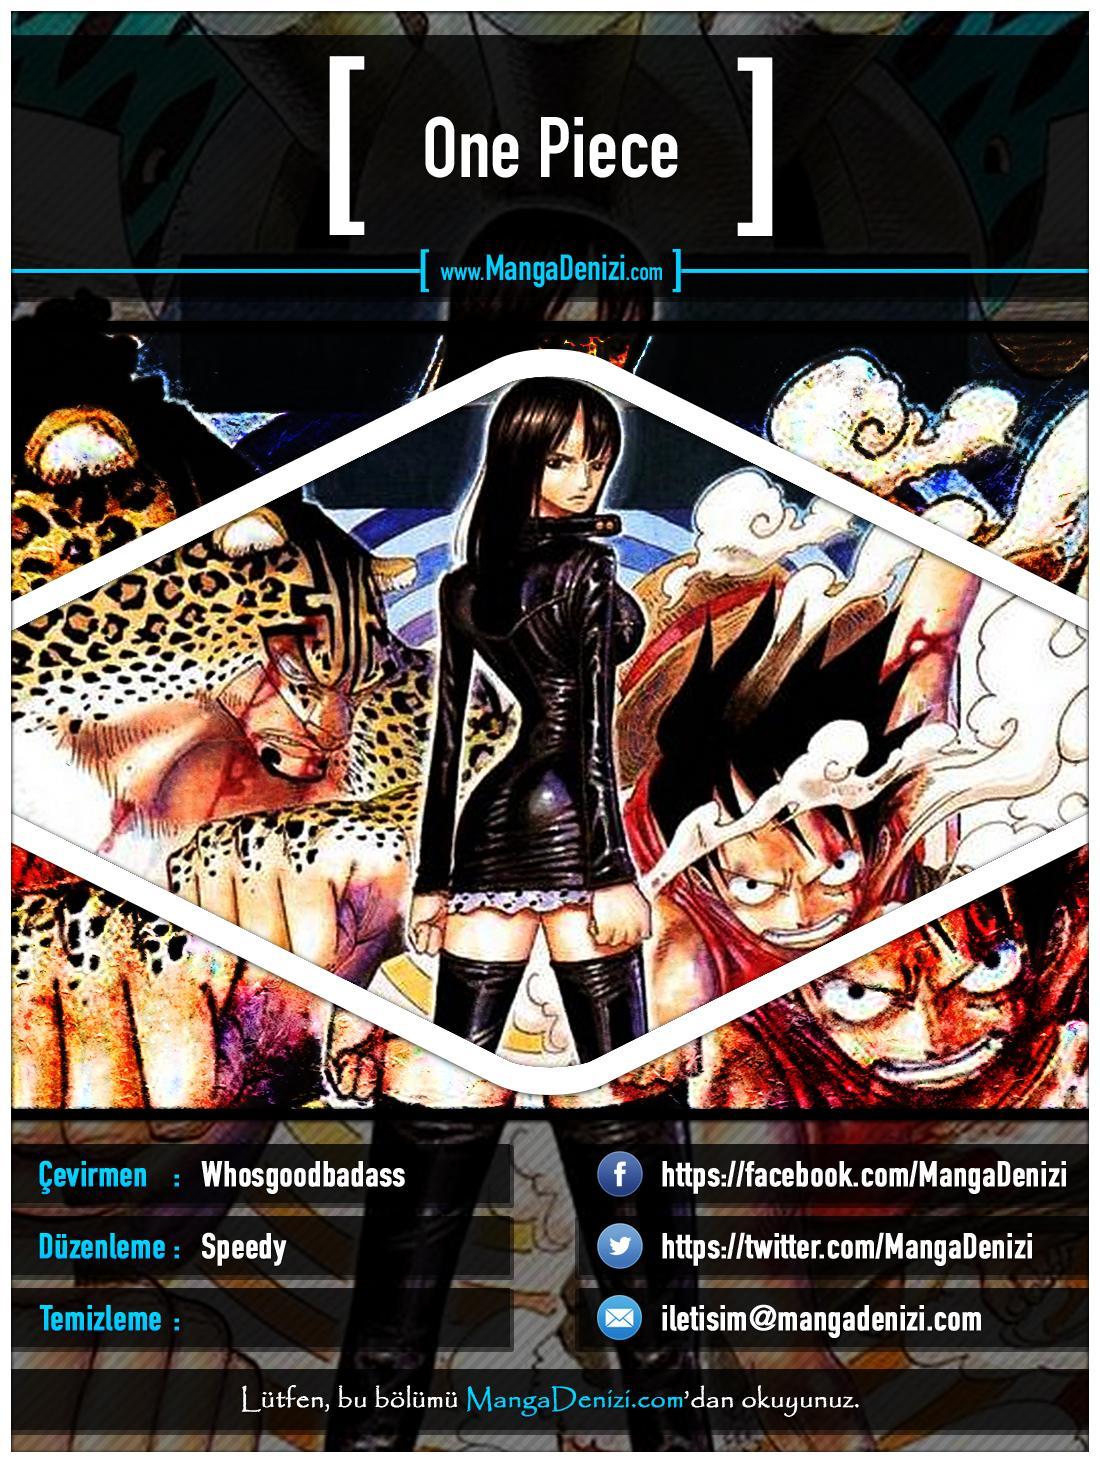 One Piece [Renkli] mangasının 0386 bölümünün 1. sayfasını okuyorsunuz.